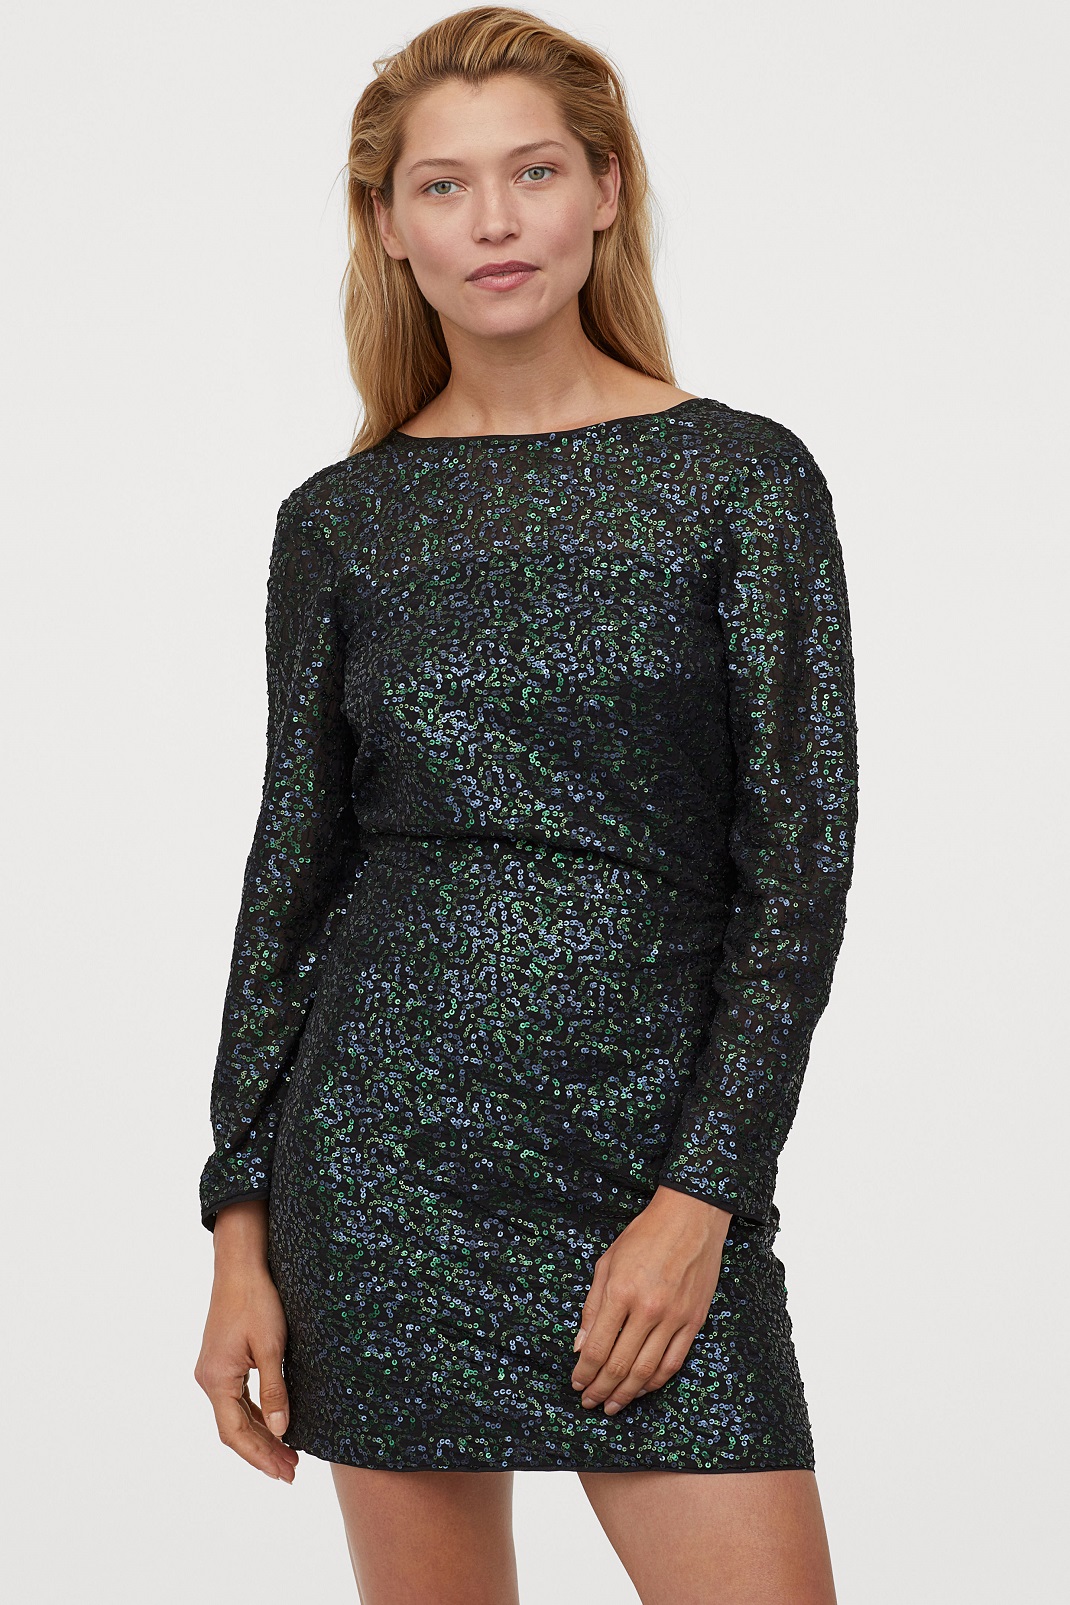 Γυναίκα φορά πράσινο φόρεμα από τα H&M